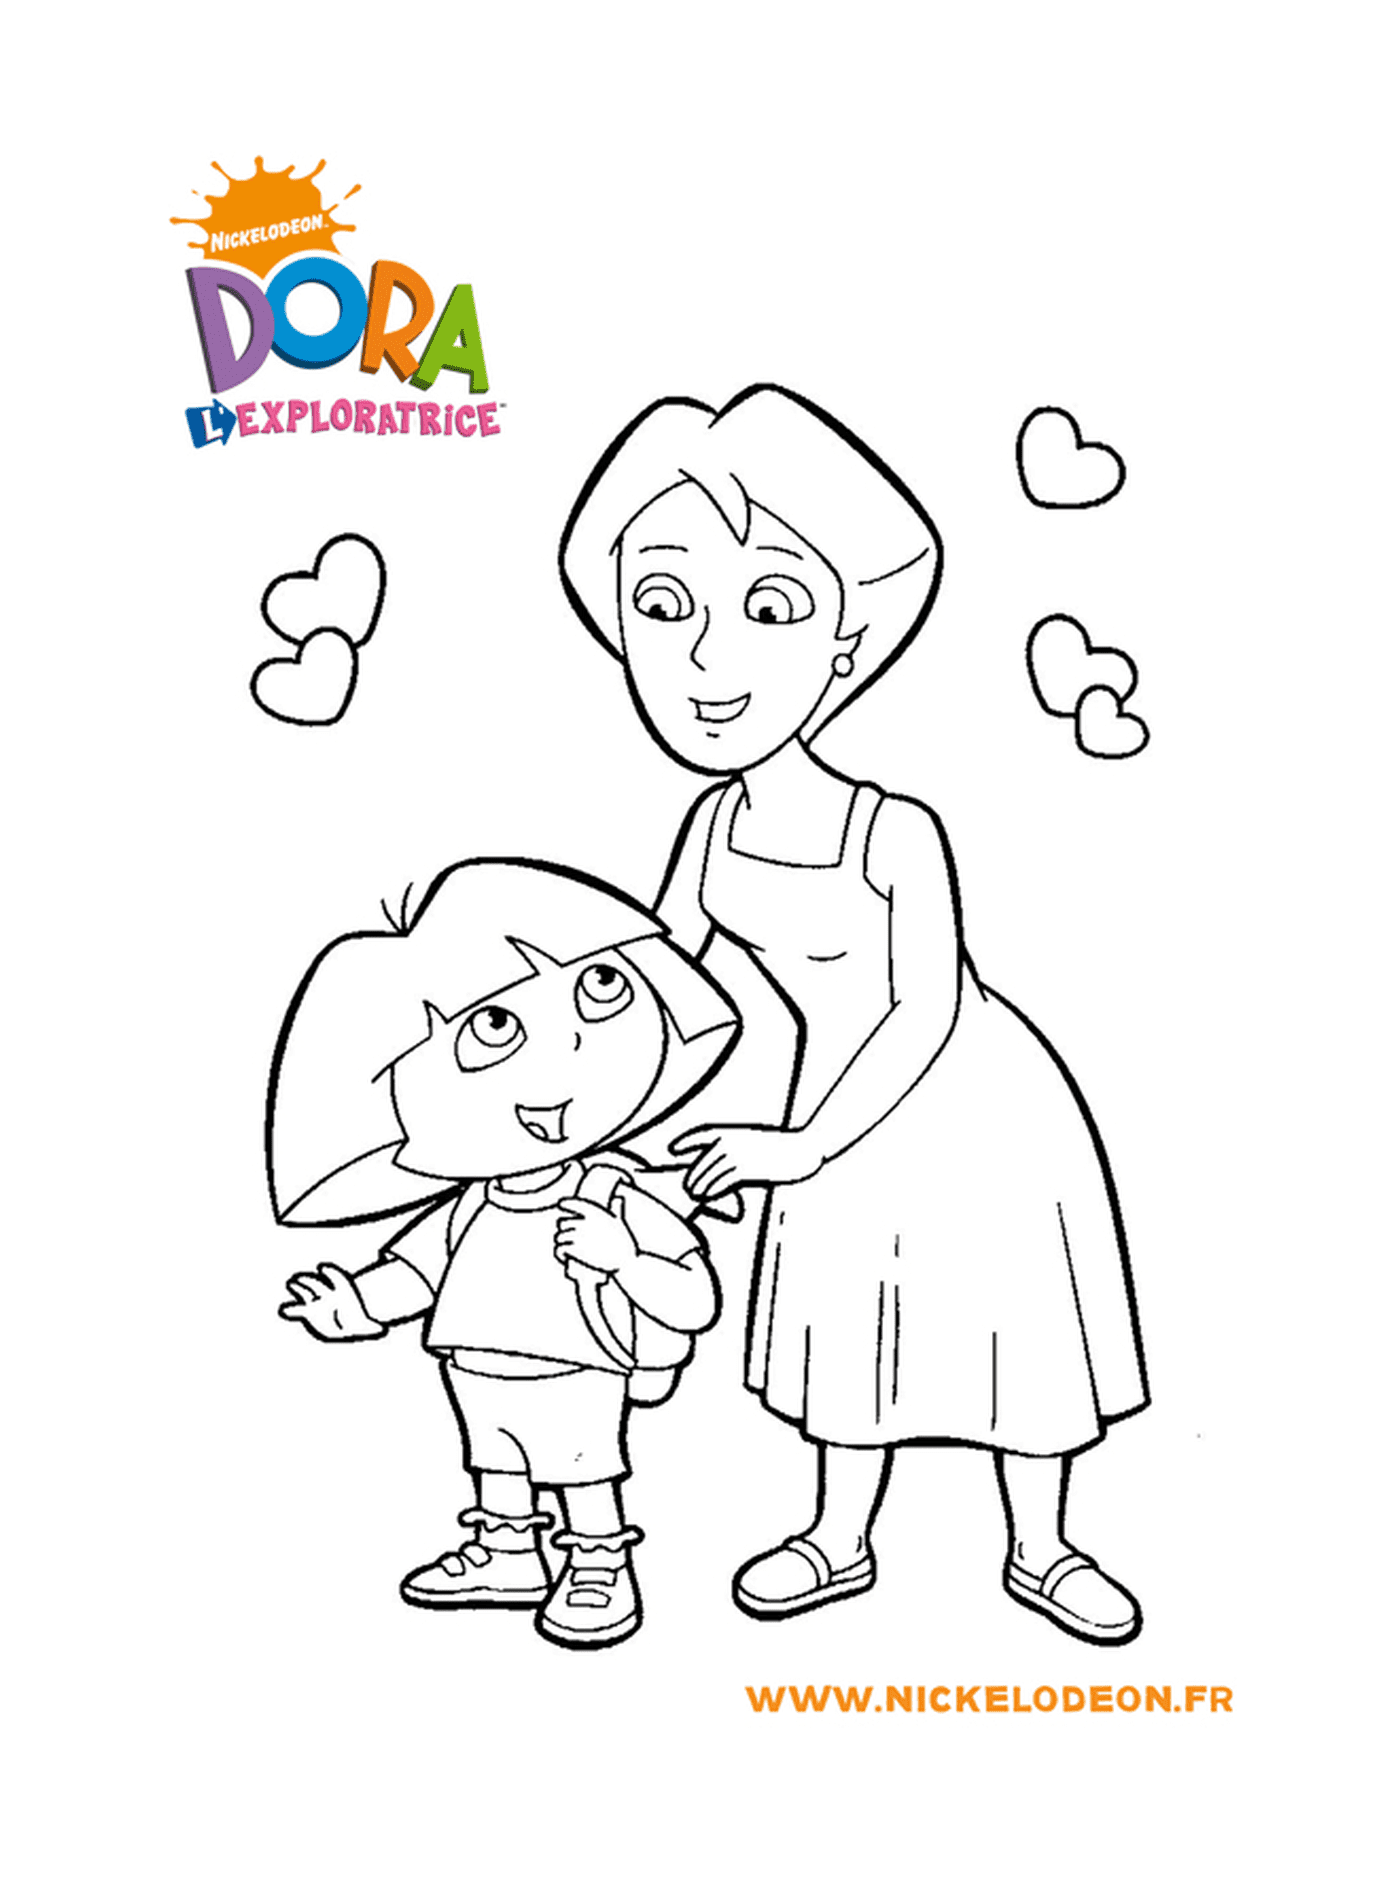   Dora passe du temps précieux avec sa maman 